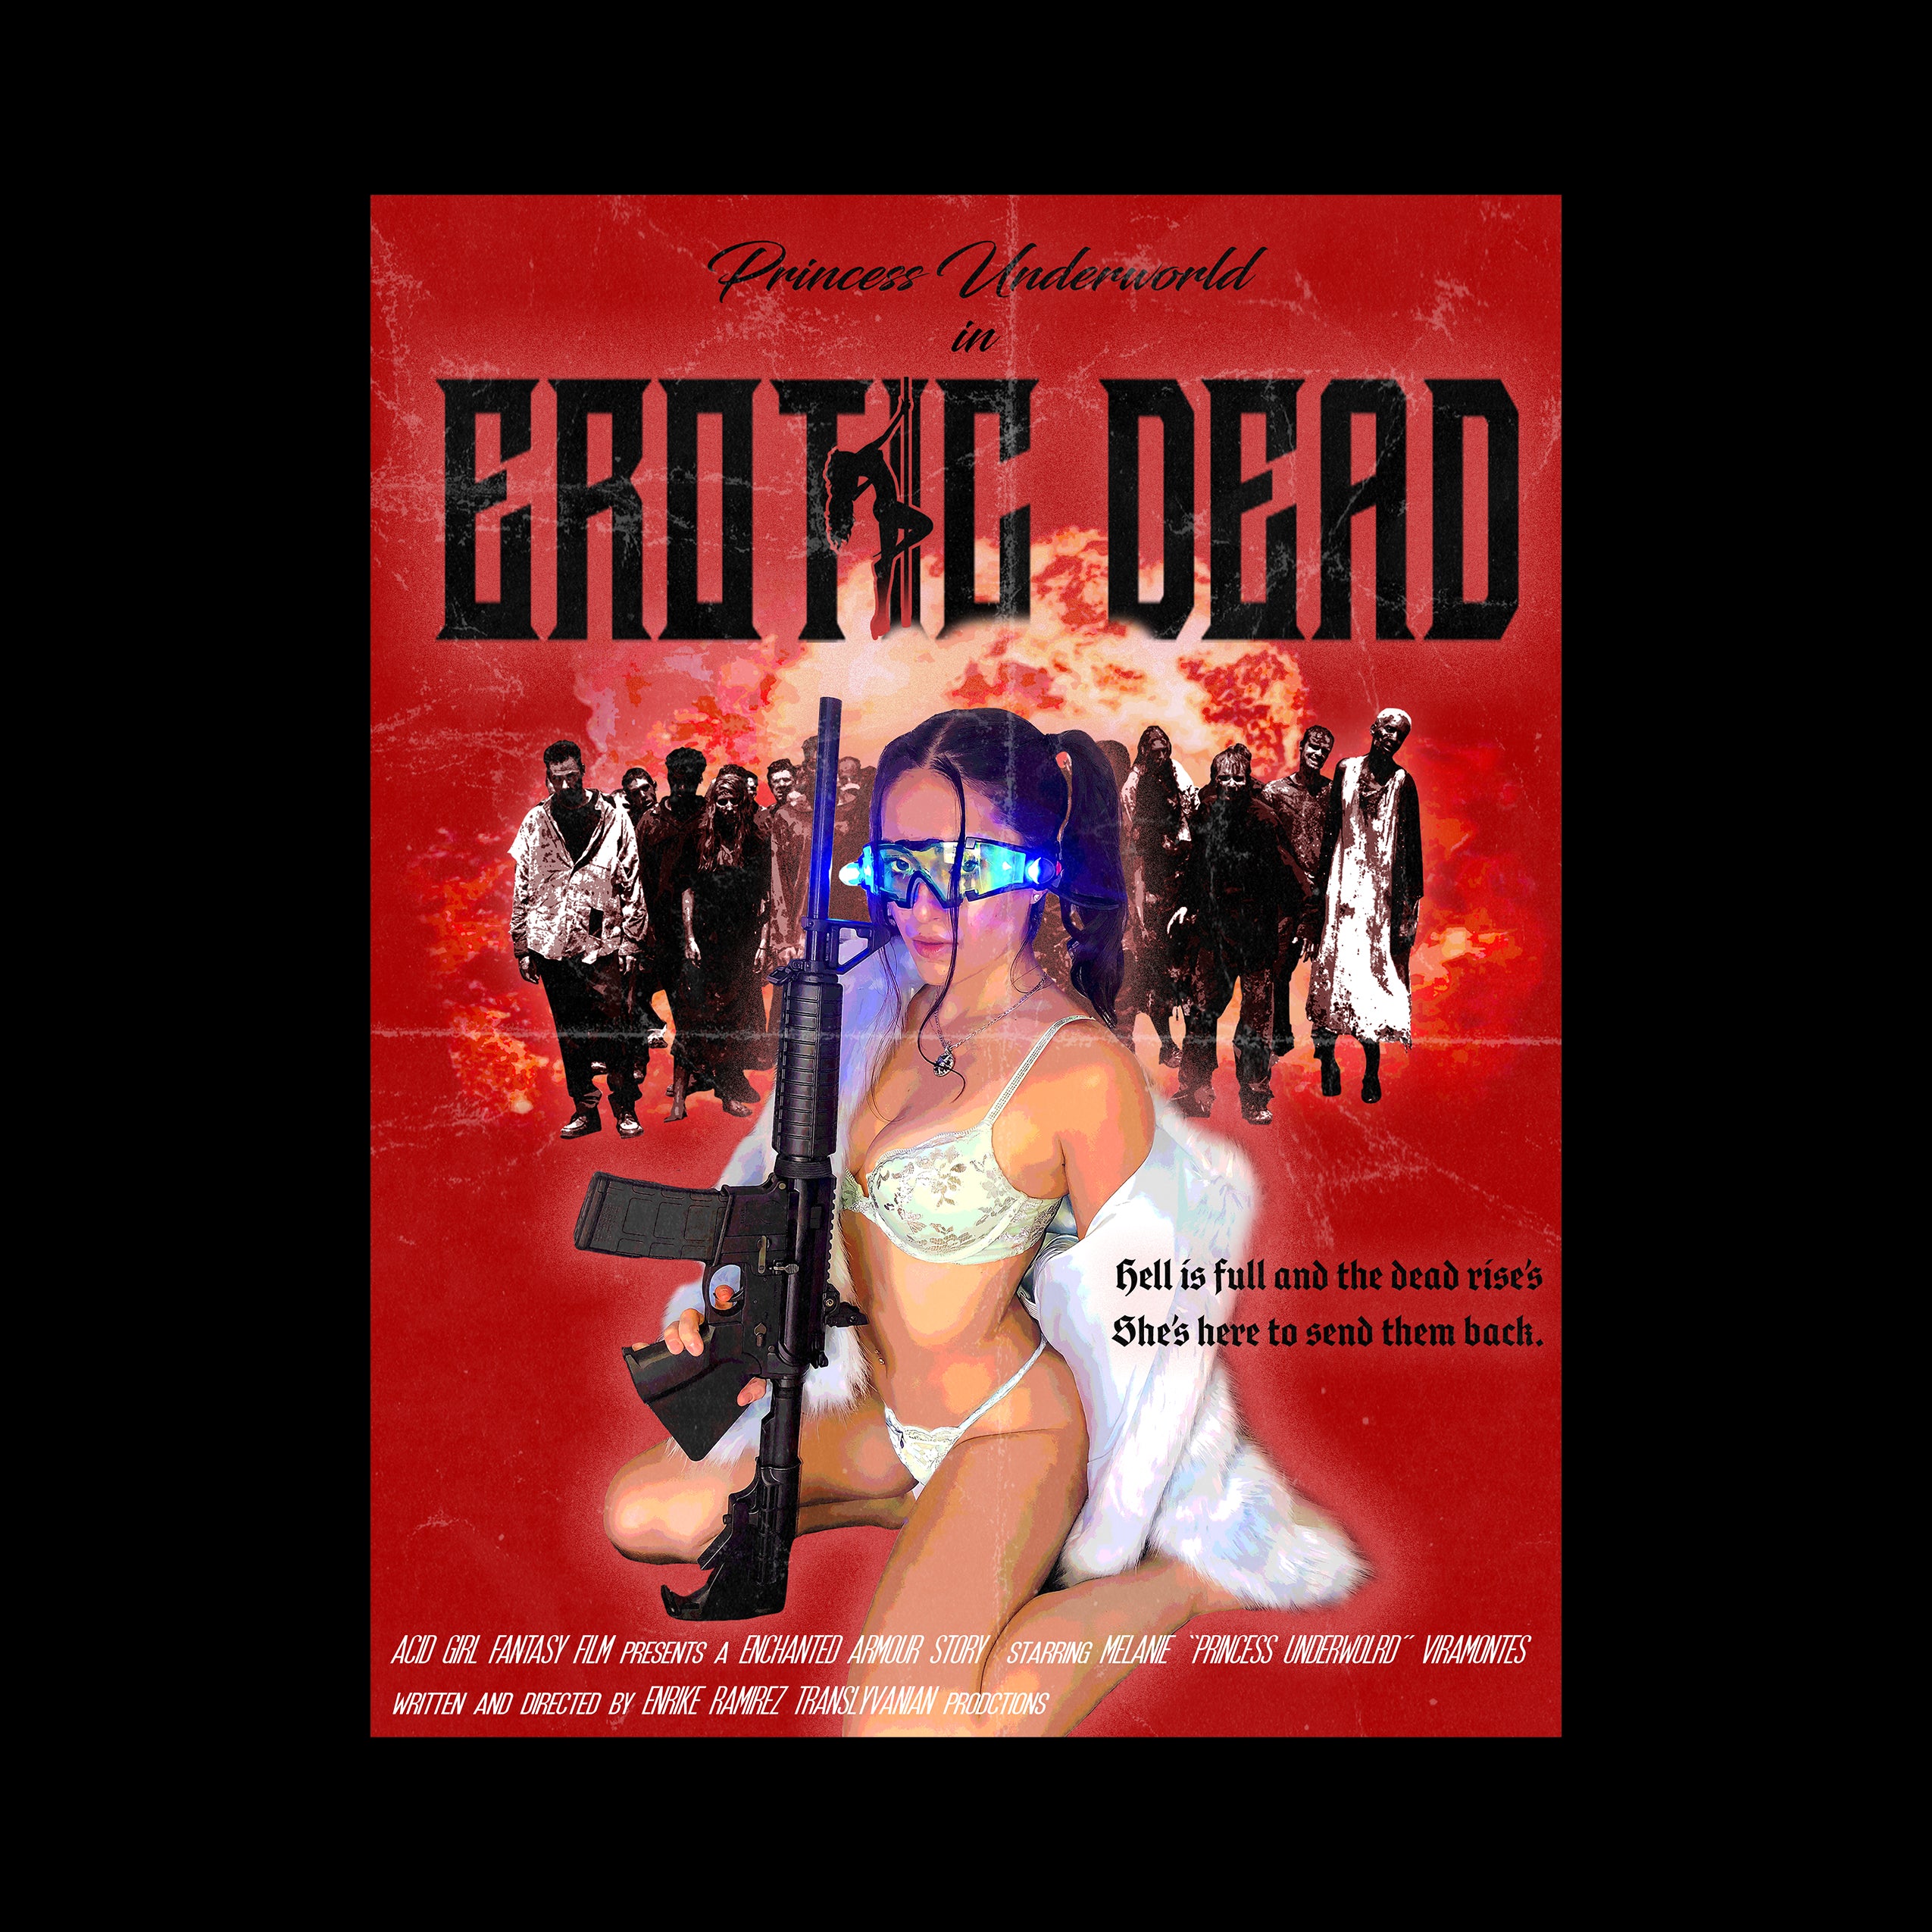 Erotic Dead Movie Poster